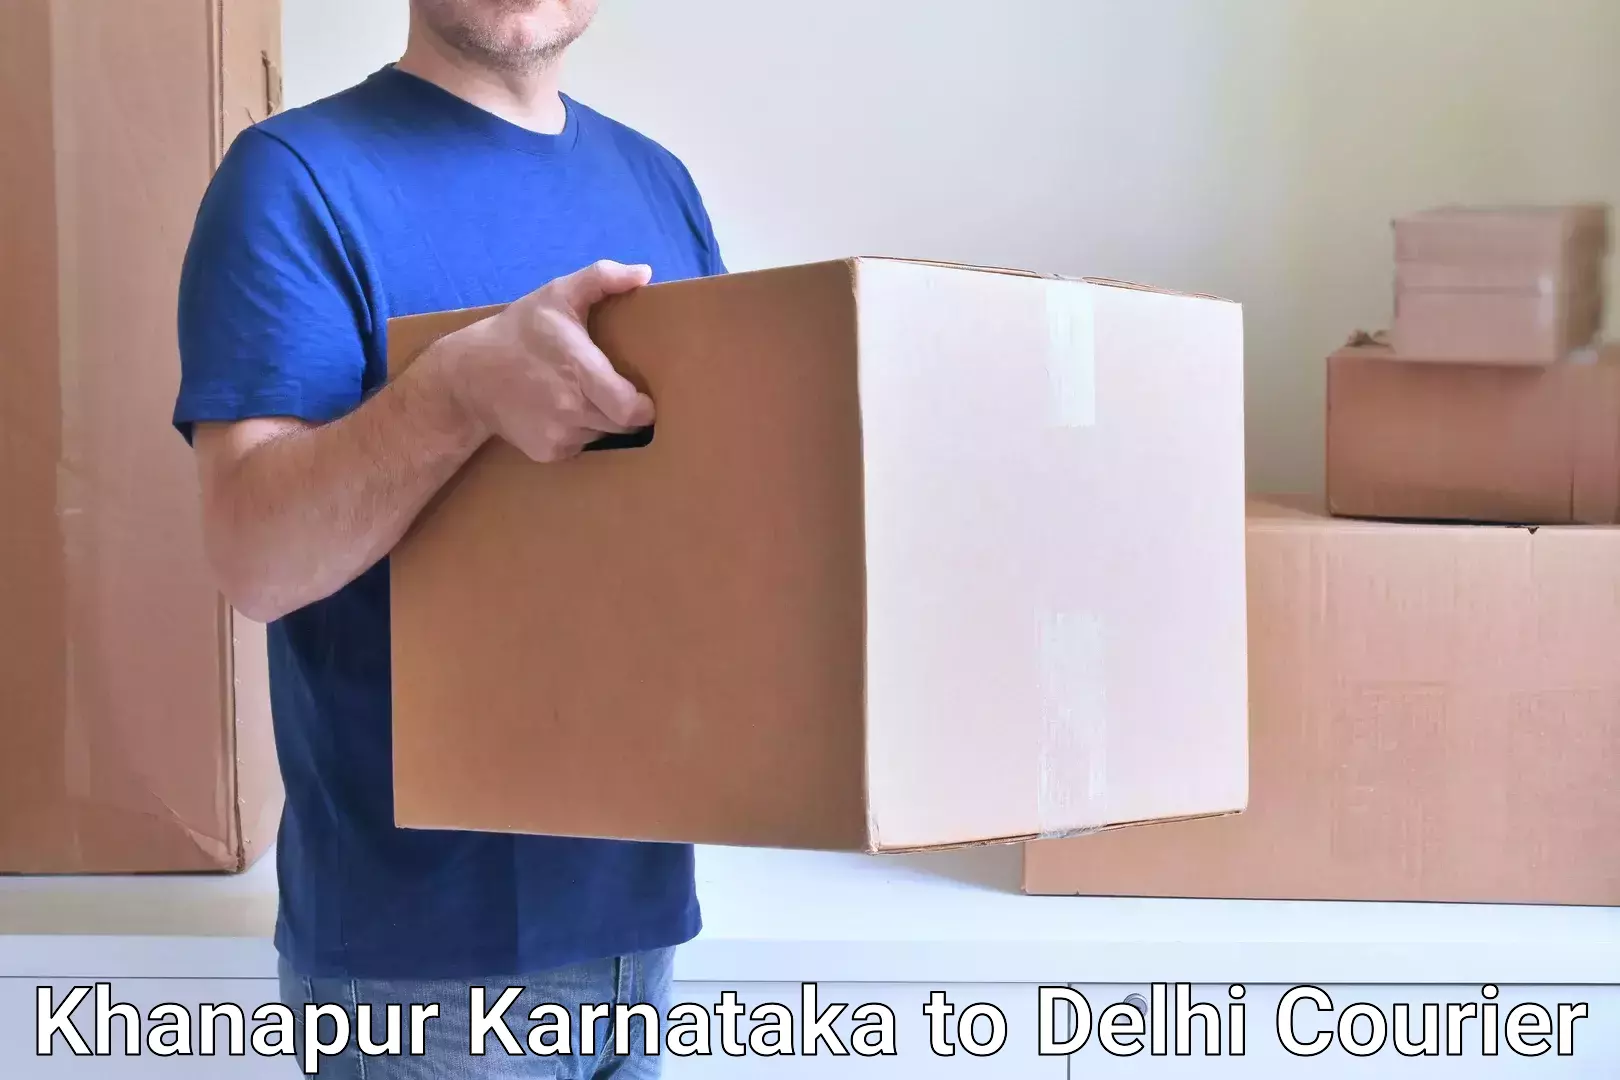 Global courier networks Khanapur Karnataka to Indraprastha